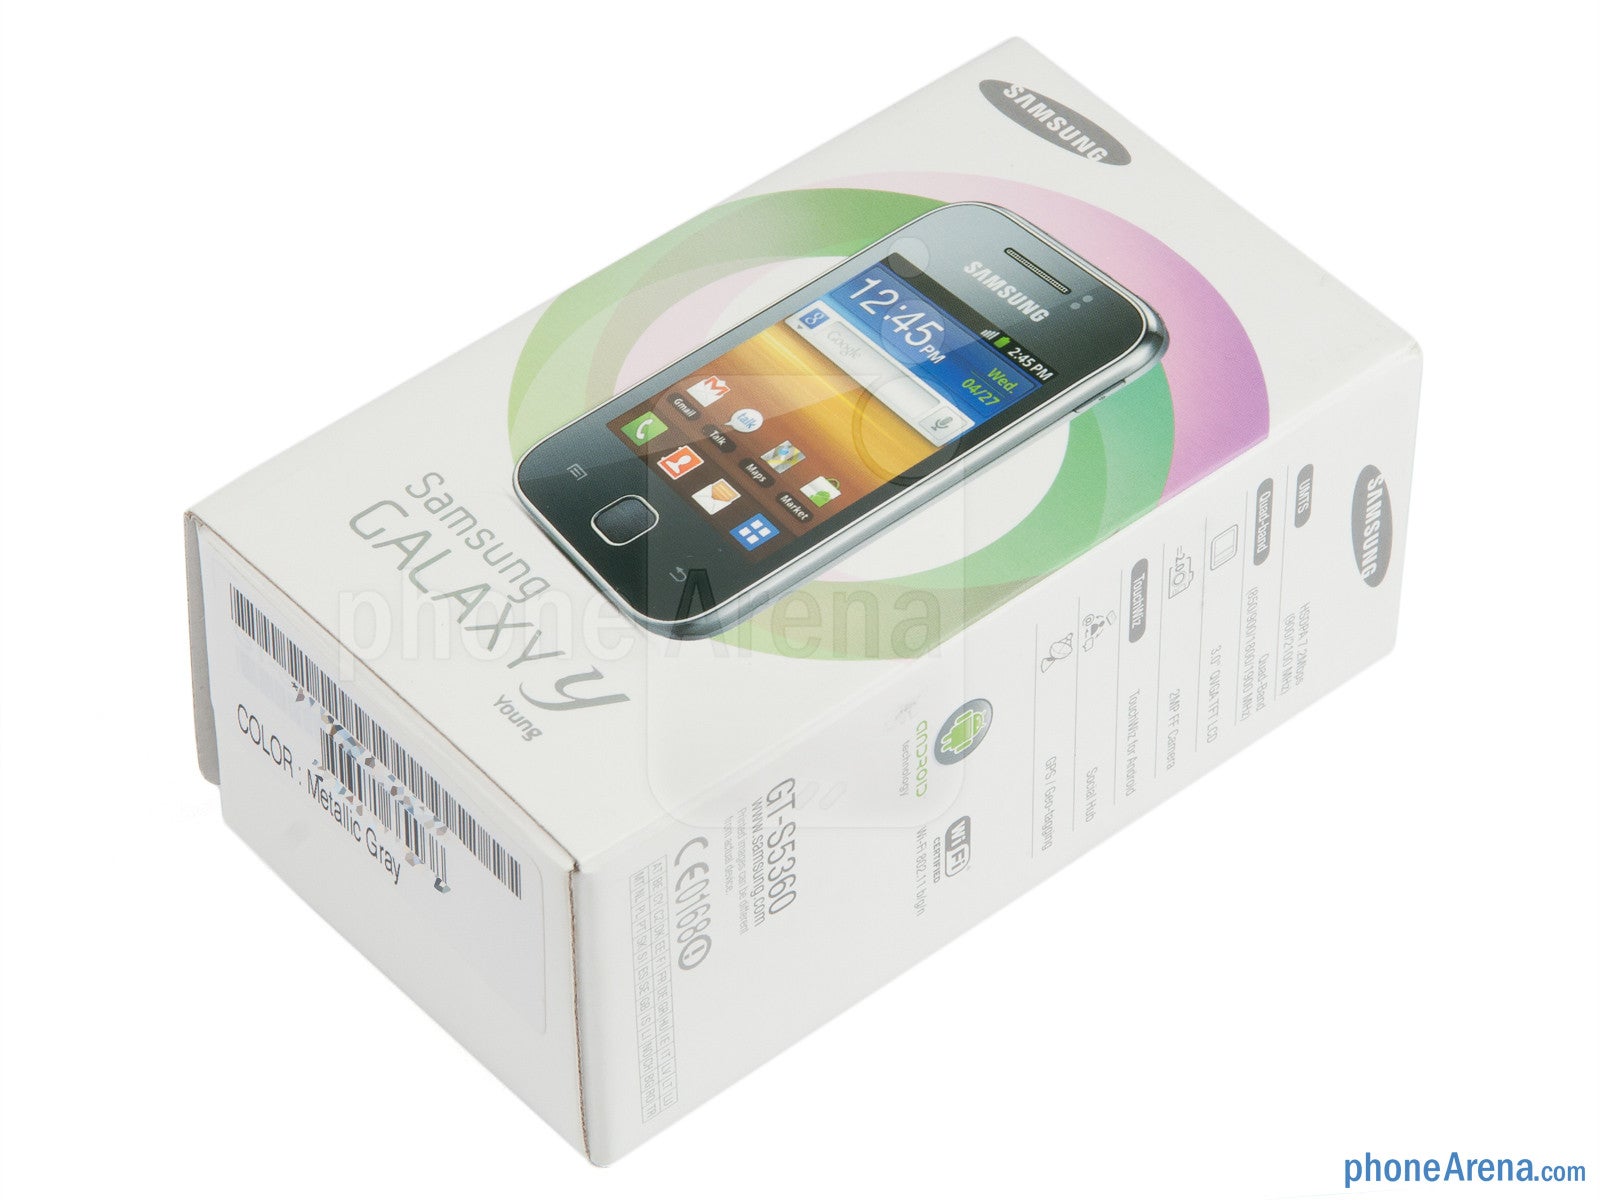 Samsung Galaxy Y Review - PhoneArena